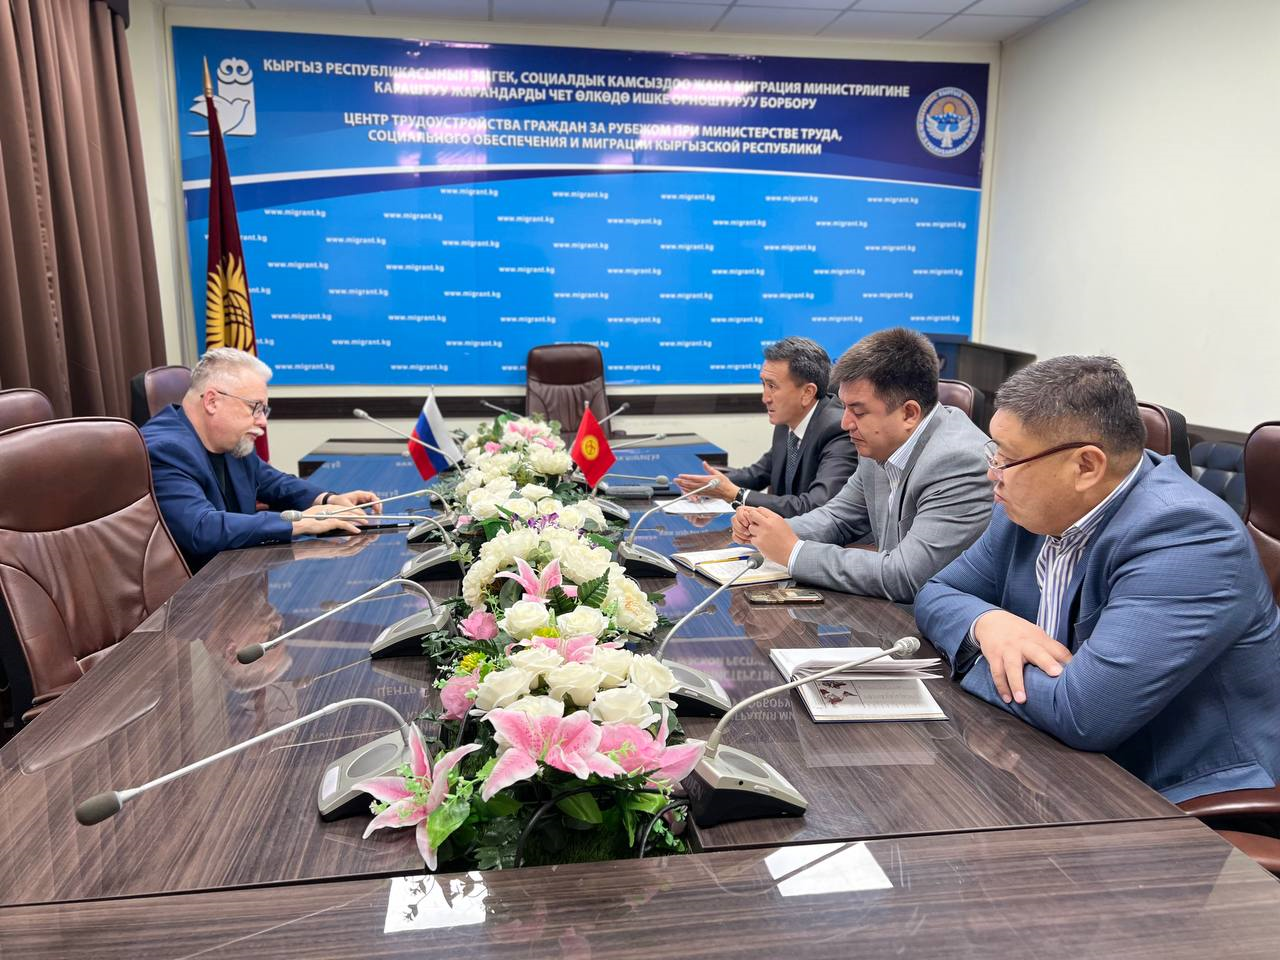 Встреча по трудоустройству: обсуждение возможностей для граждан Кыргызской Республики в Свердловской области